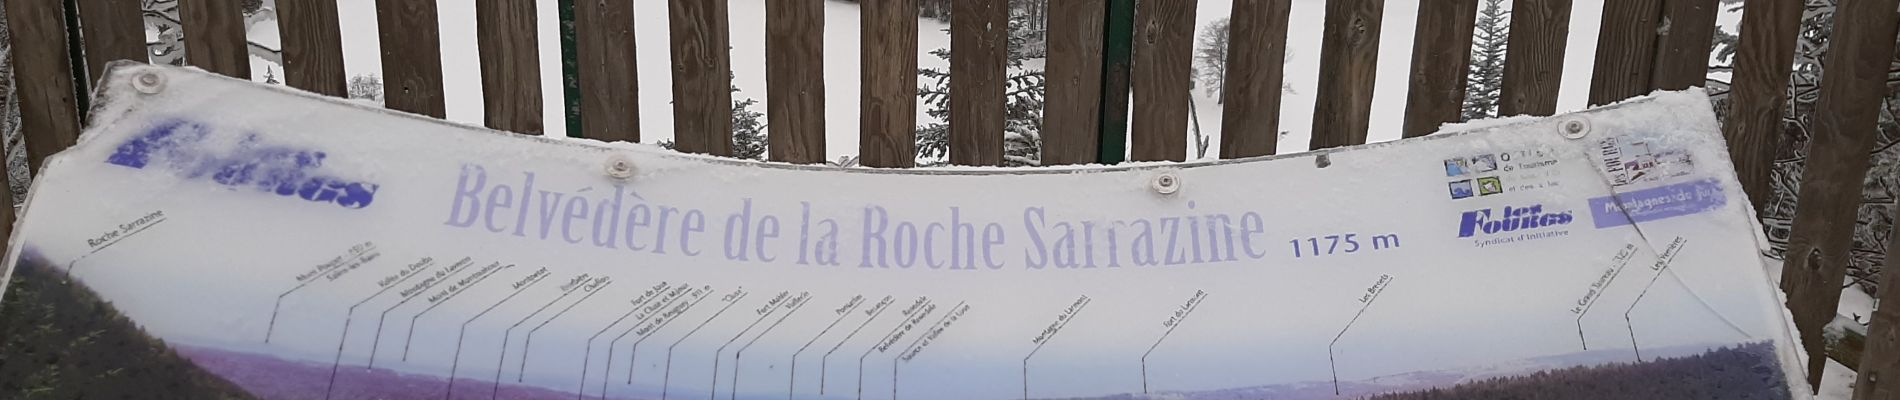 Percorso Racchette da neve Les Fourgs - La Roche Sarrazine Les Fourgs - Photo